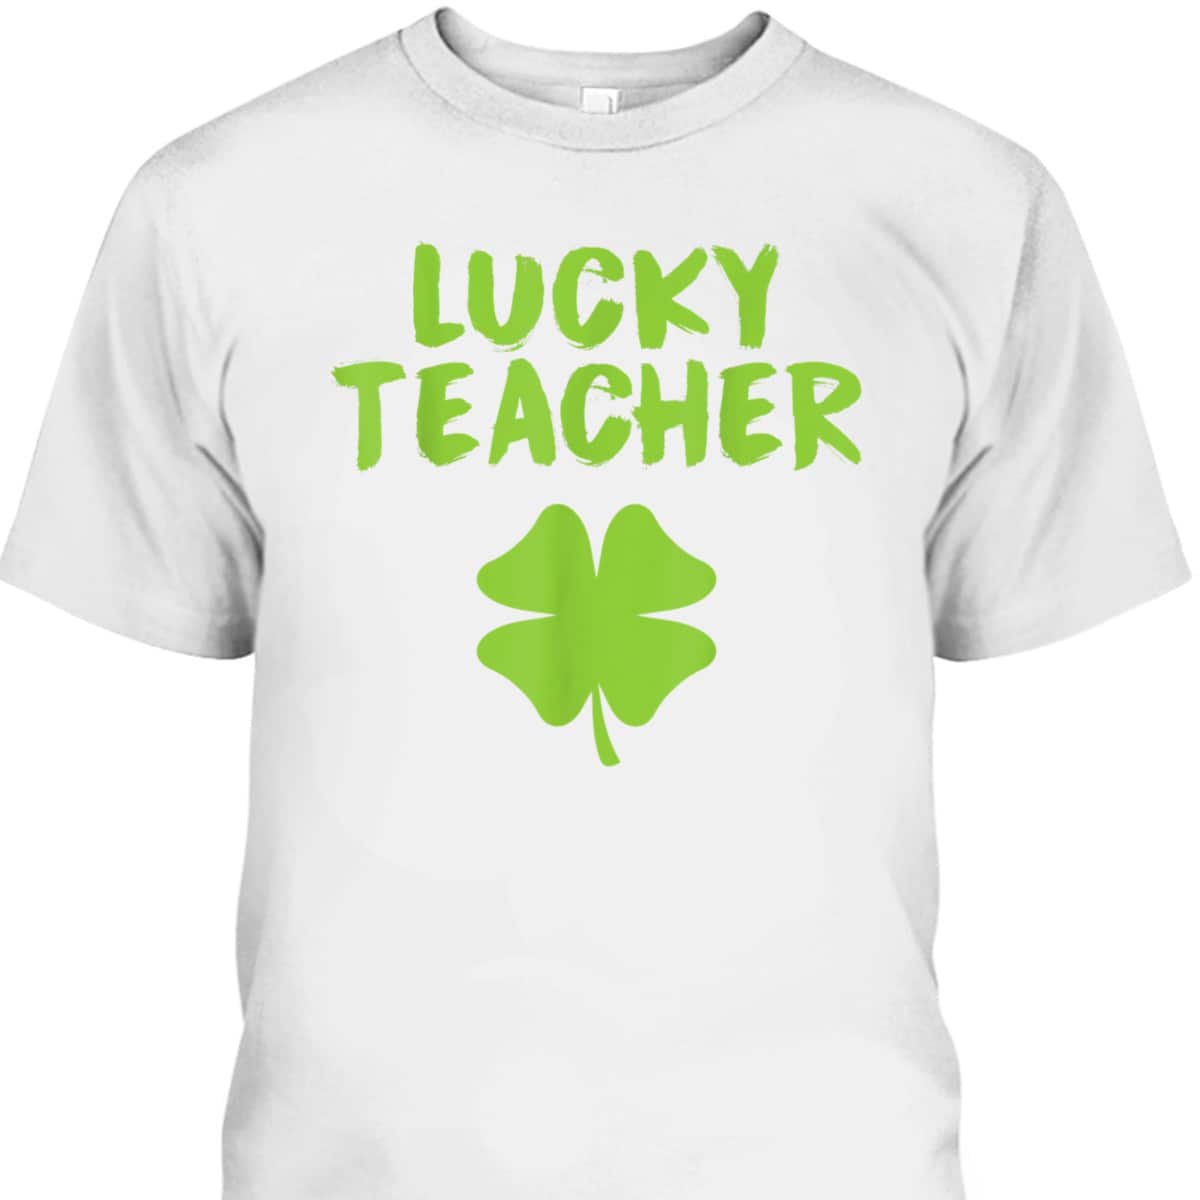 Lucky Teacher Shamrock St Patrick's Day T-Shirt